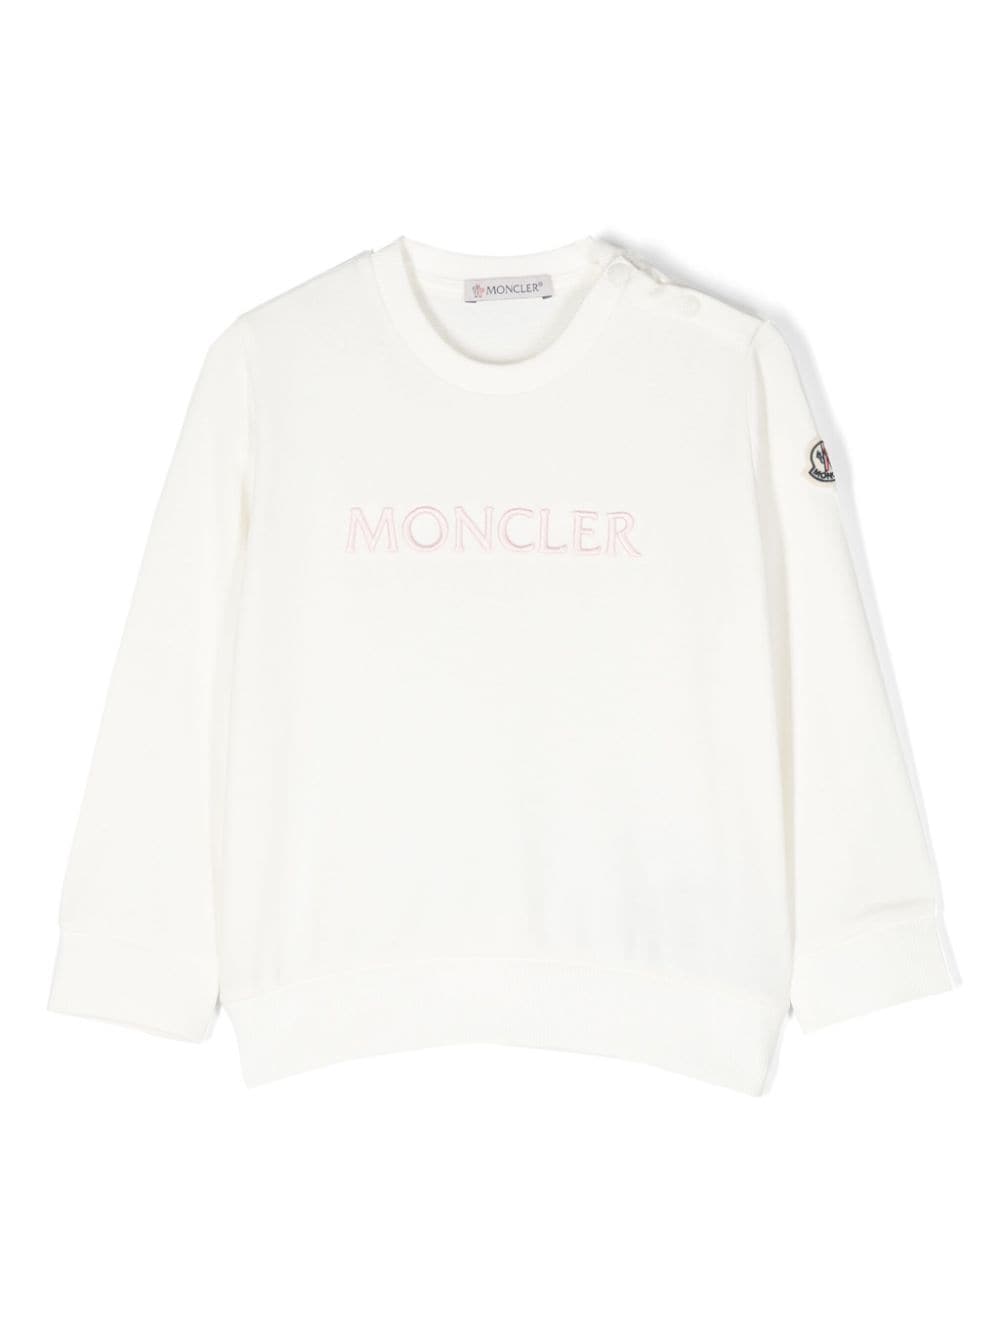 Moncler Enfant embroidered-logo sweatshirt - White von Moncler Enfant